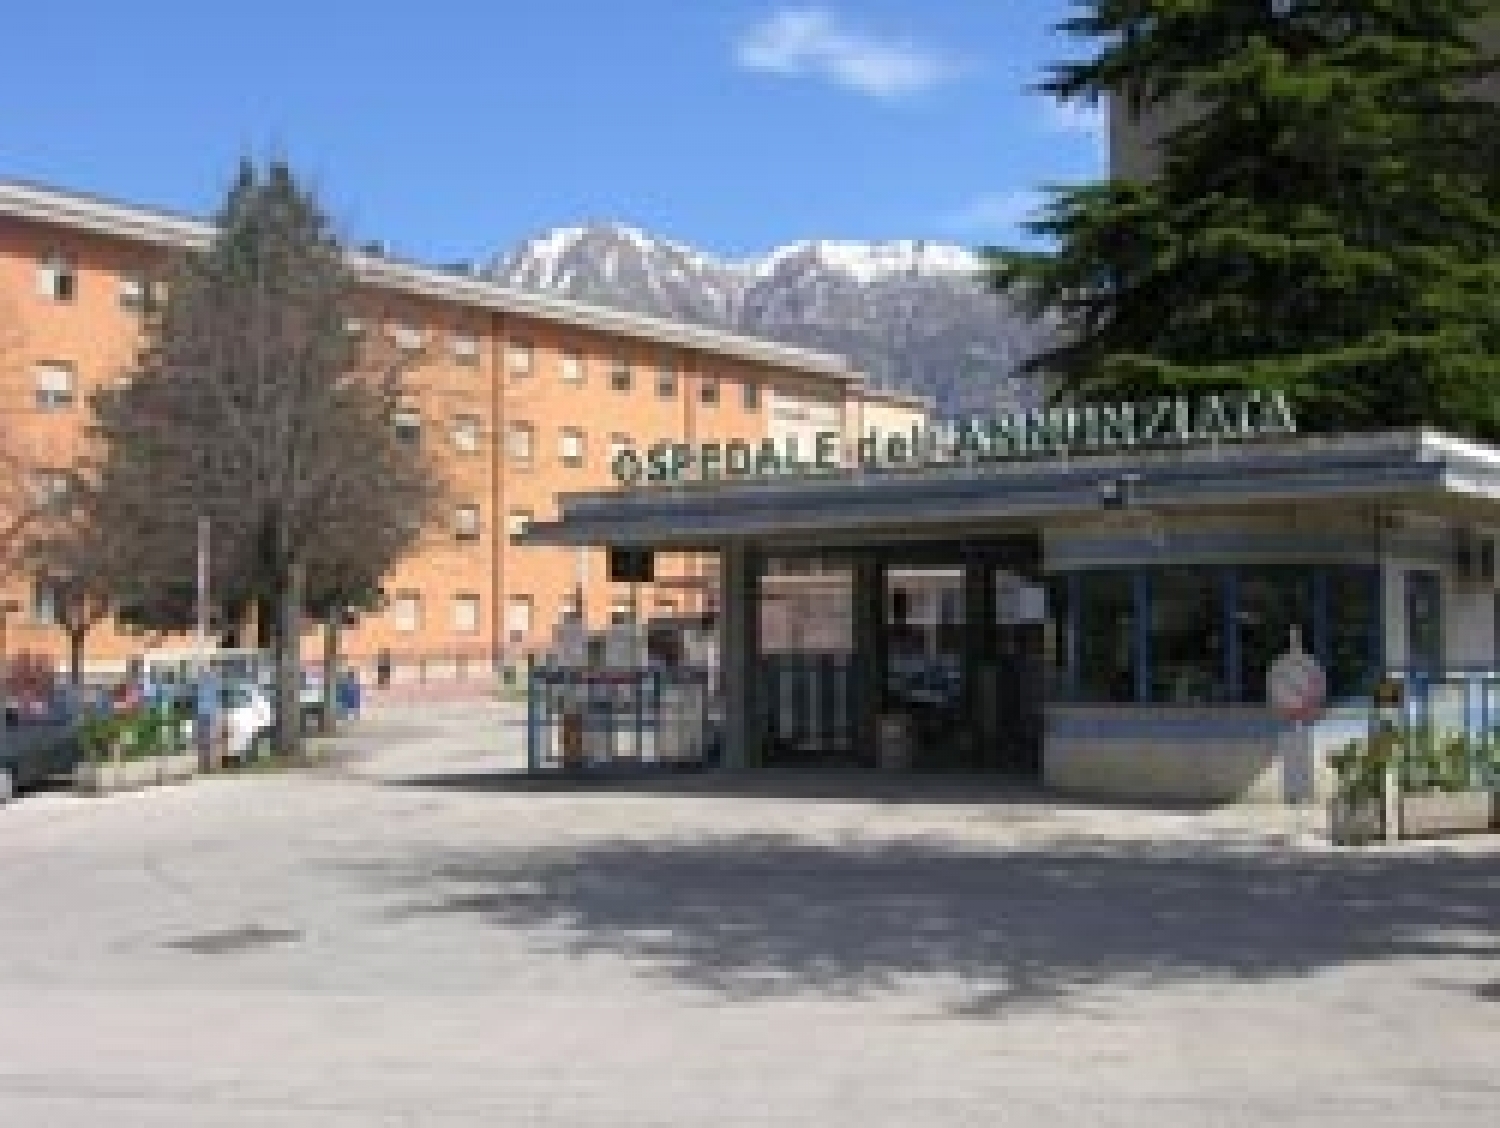 ospedalesulmona1.jpg